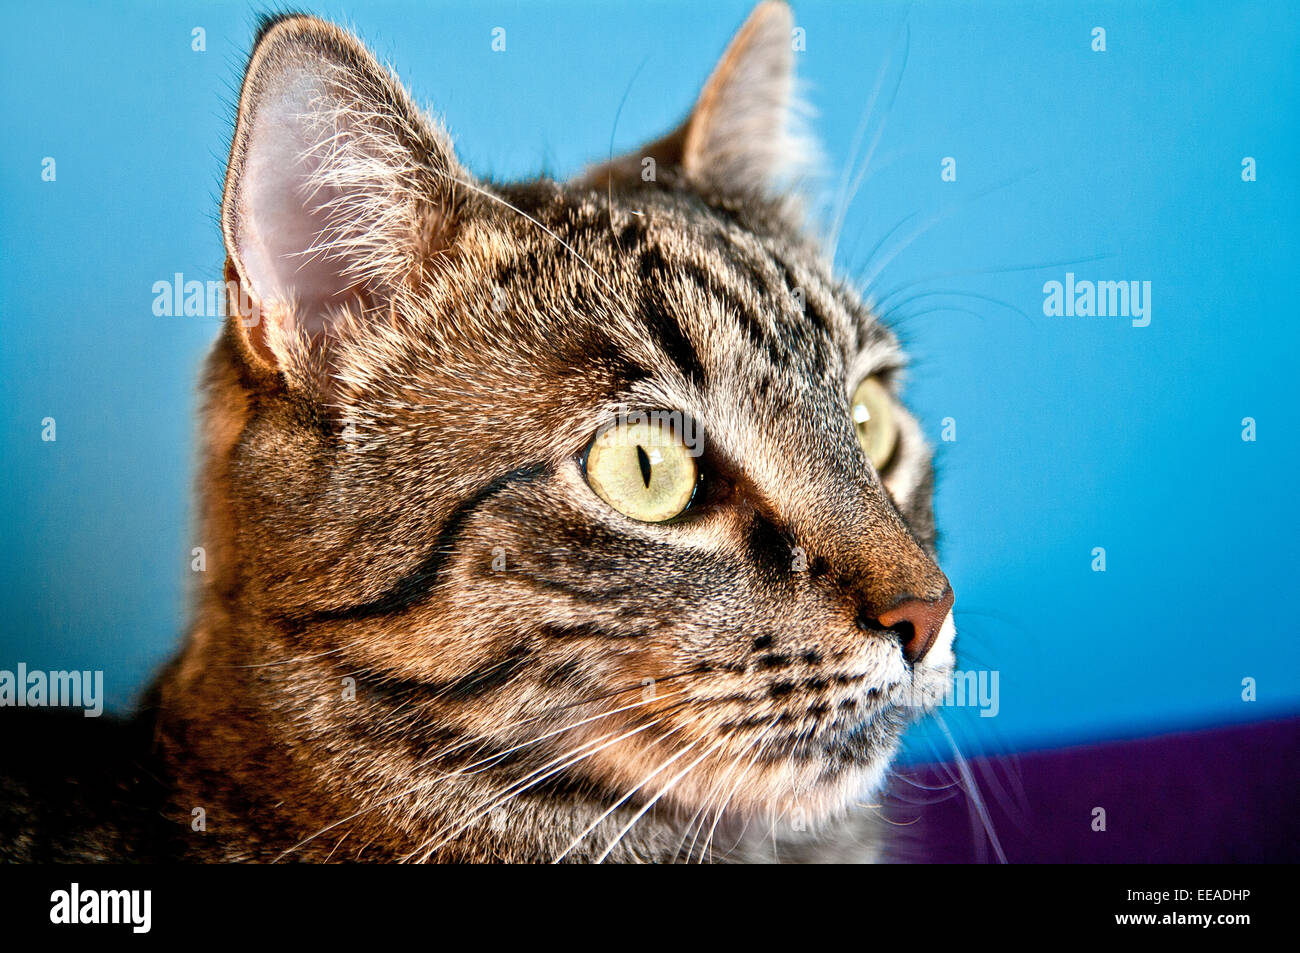 Entzuckende Tier Hintergrundbild Schone Blaue Kamera Katze Enge Closeup Suss Auge Augen Gesicht Flauschige Vorderen Lustige Graue Haare Kopf Stockfotografie Alamy